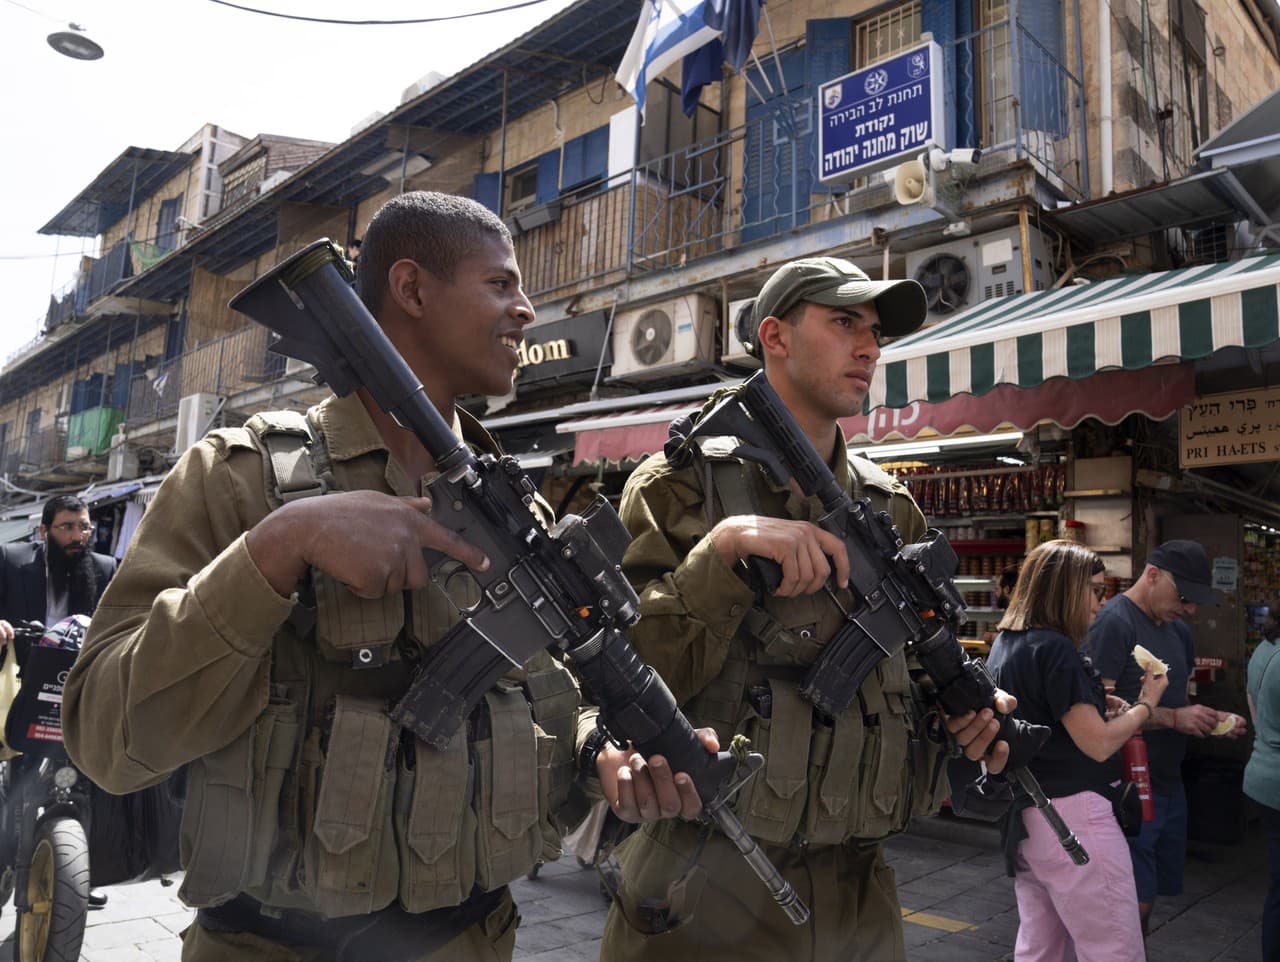 Izraelskí vojaci hliadkujú na trhovisku Mahane Yehuda v Jeruzaleme v rámci zvýšených bezpečnostných opatrení, v nedeľu 3. apríla 2022.